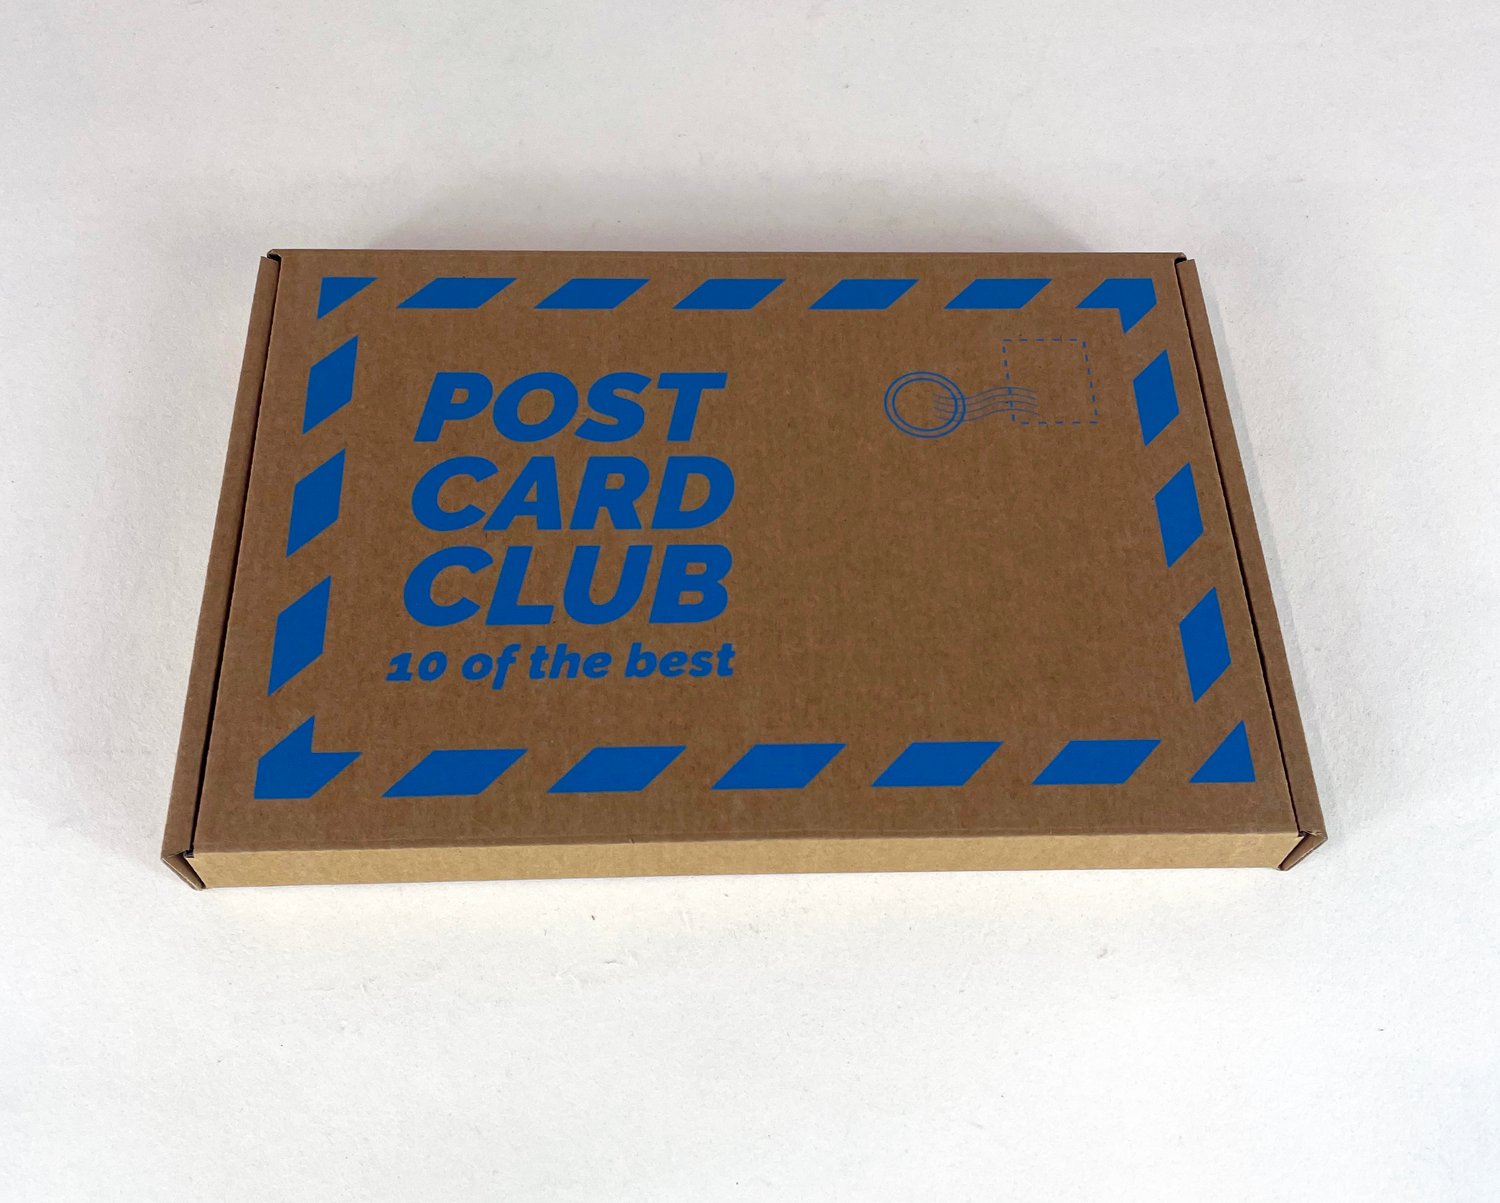 Image of Post Card box set